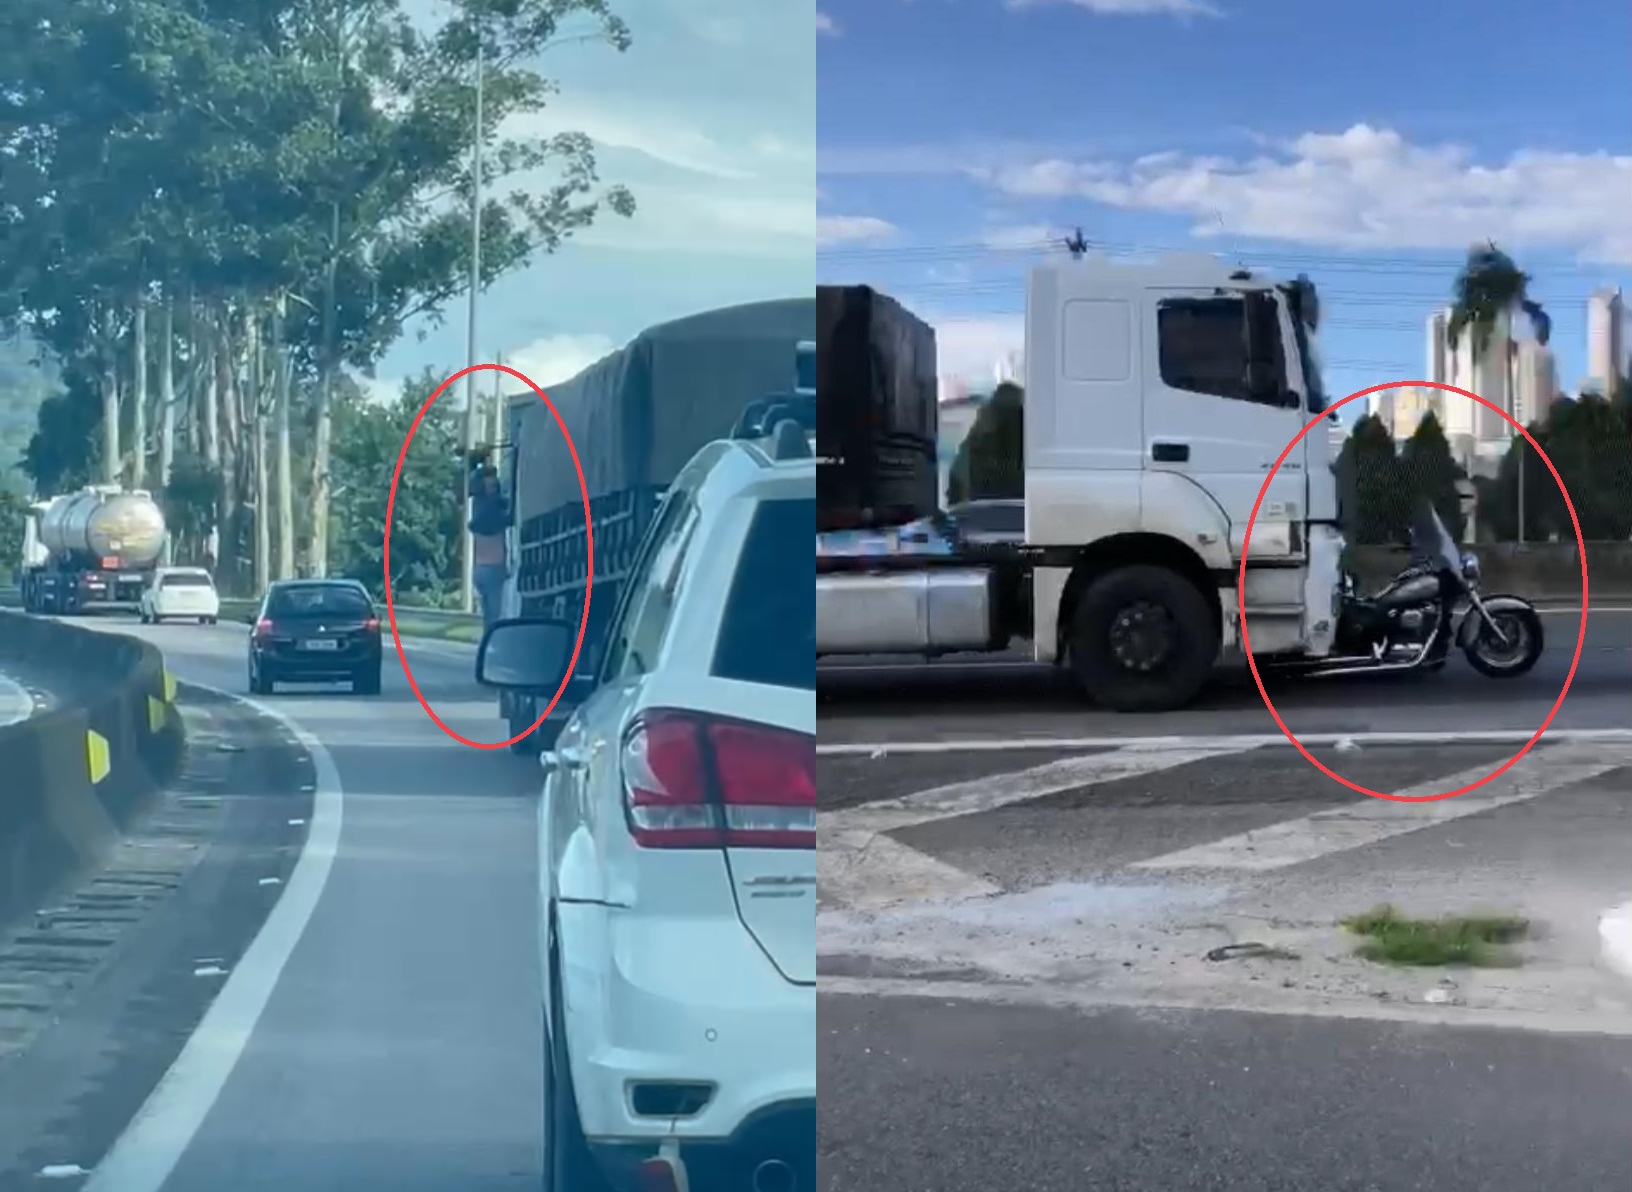 Vídeo mostra caminhoneiro em estado alterado antes de acidente